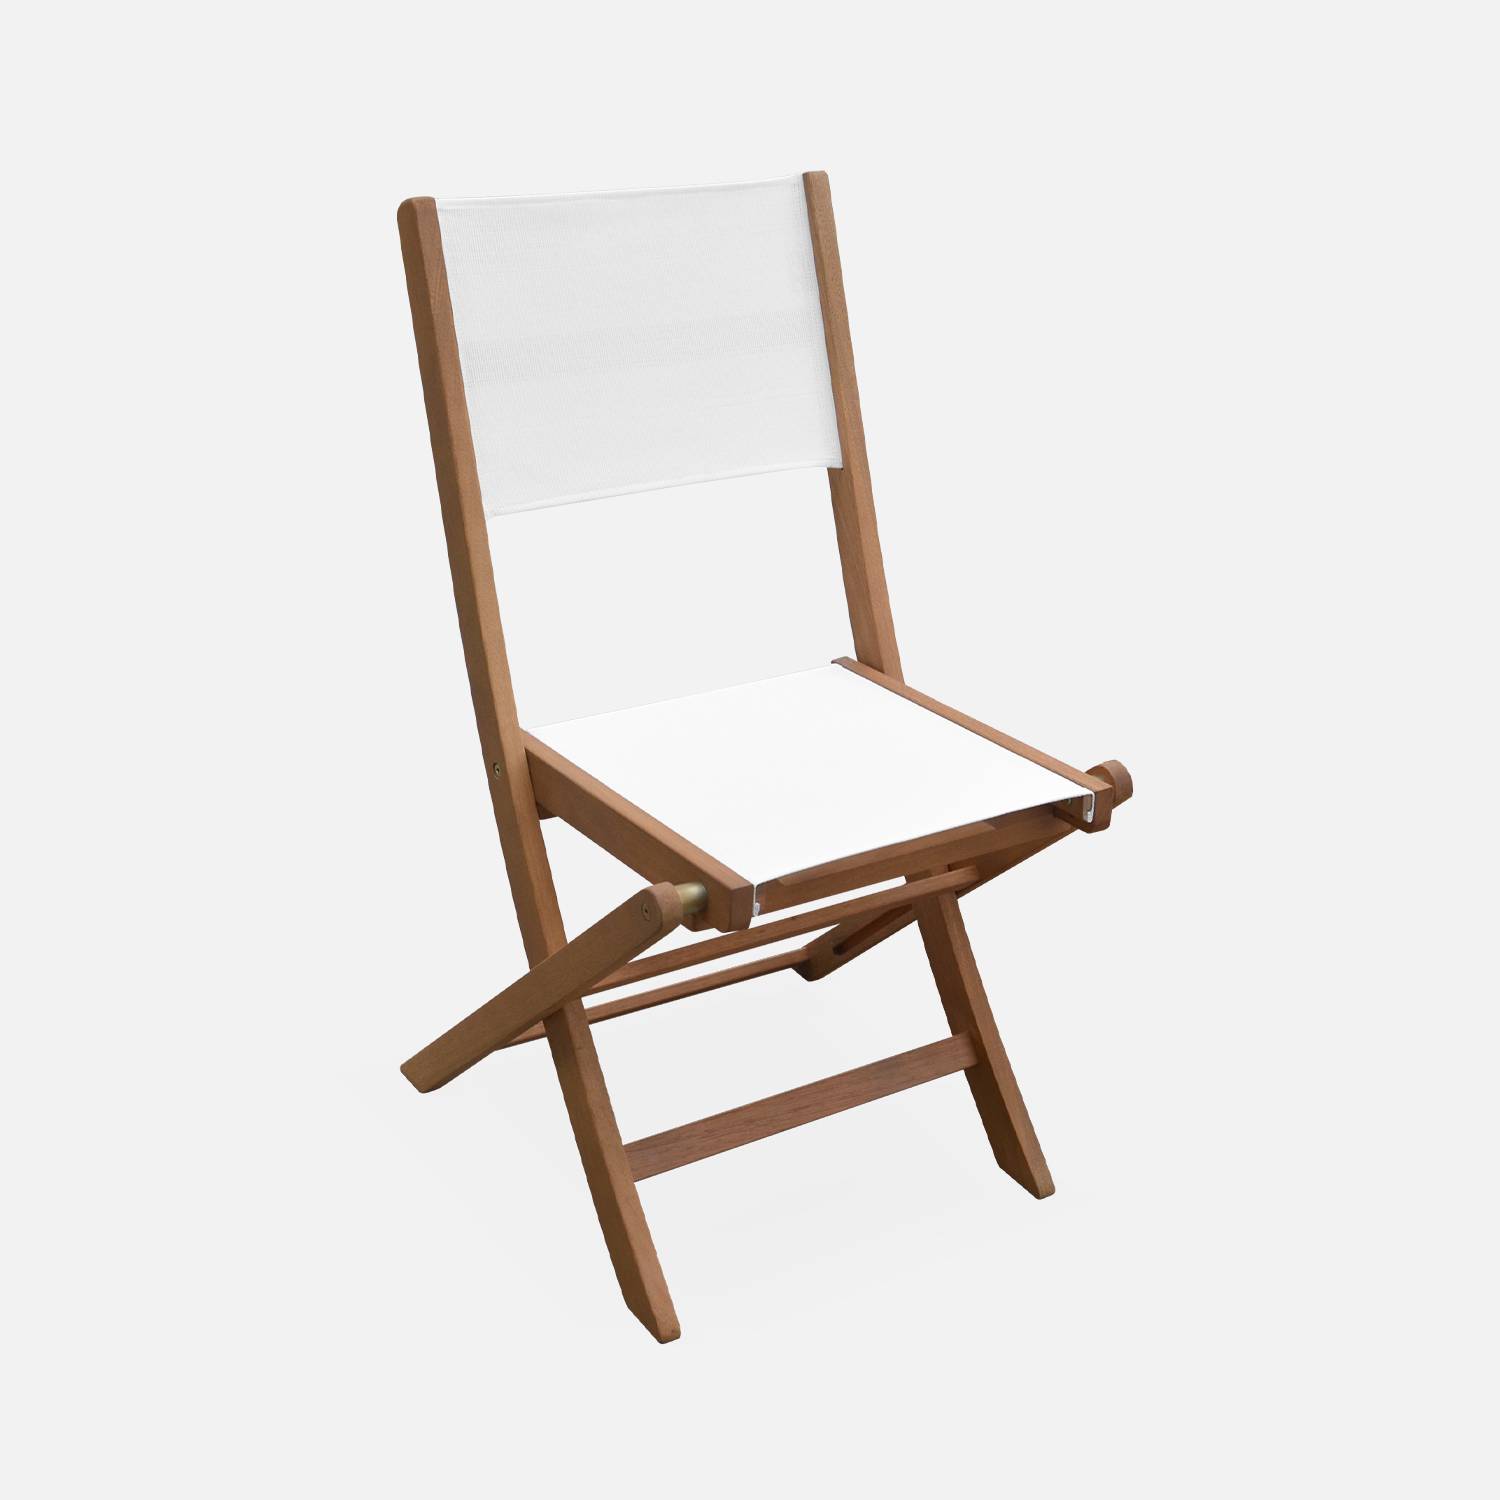 Sedie da giardino, in legno e textilene - modello: Almeria, colore: Bianco - 2 sedie pieghevoli in legno di eucalipto FSC oliato e textilene,sweeek,Photo4